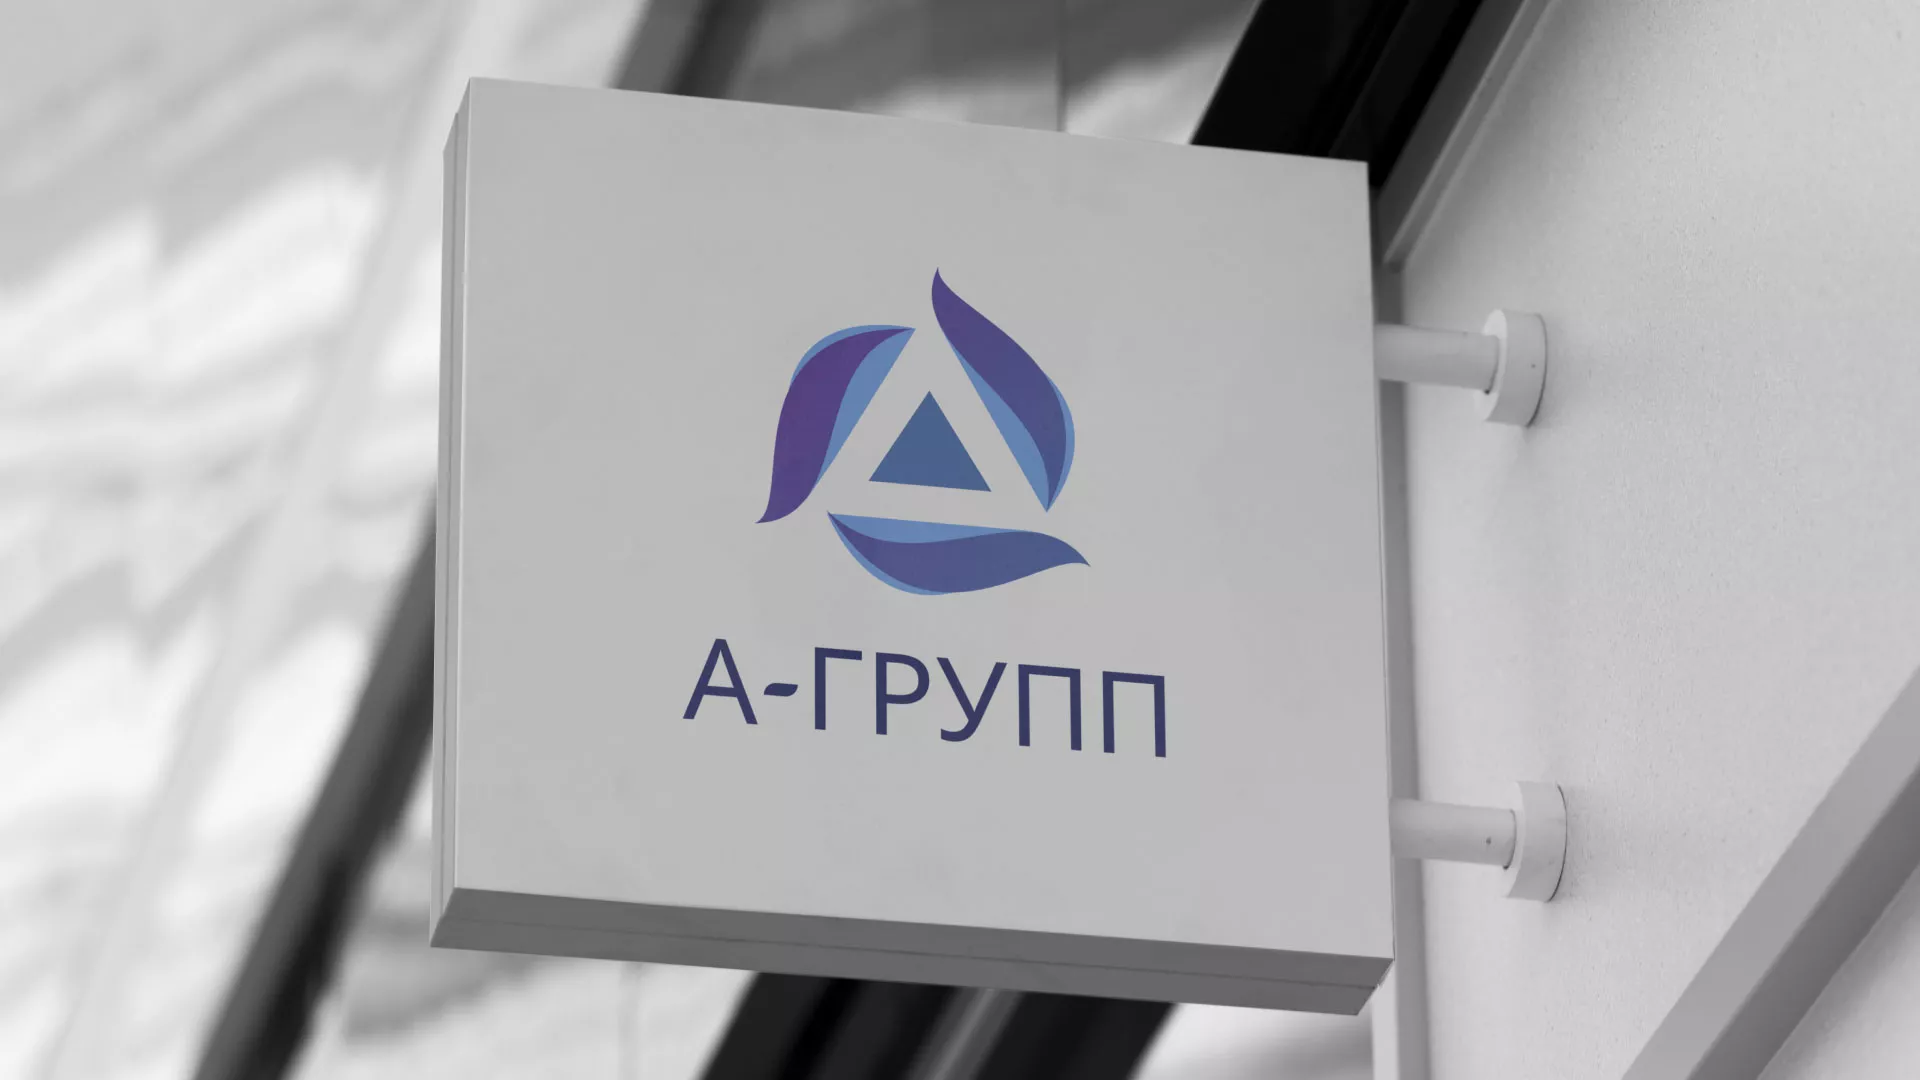 Создание логотипа компании «А-ГРУПП» в Верхнем Уфалее